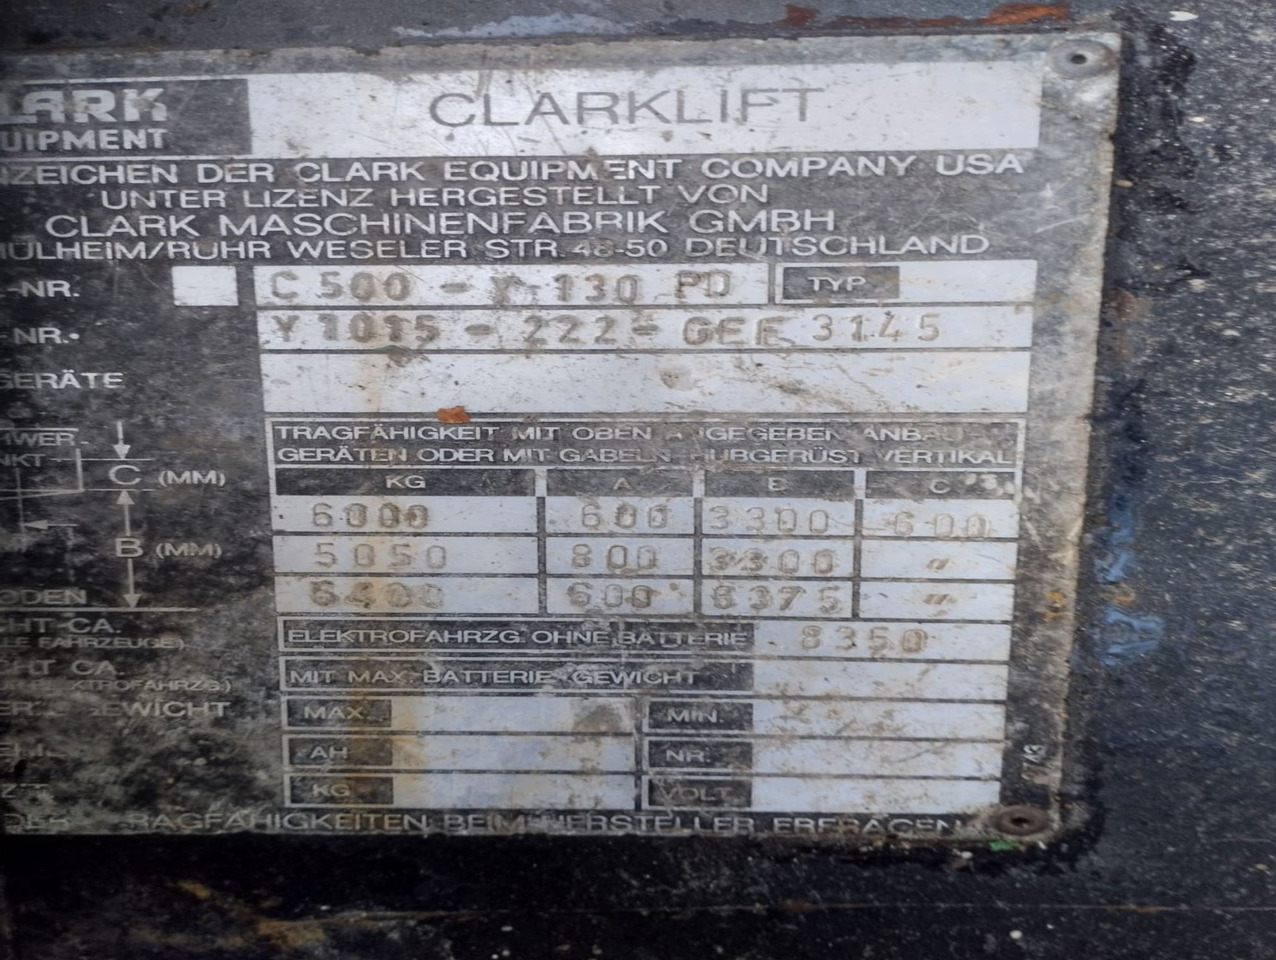 Carretilla elevadora diésel CLARK  C500 Y130 PD: foto 15